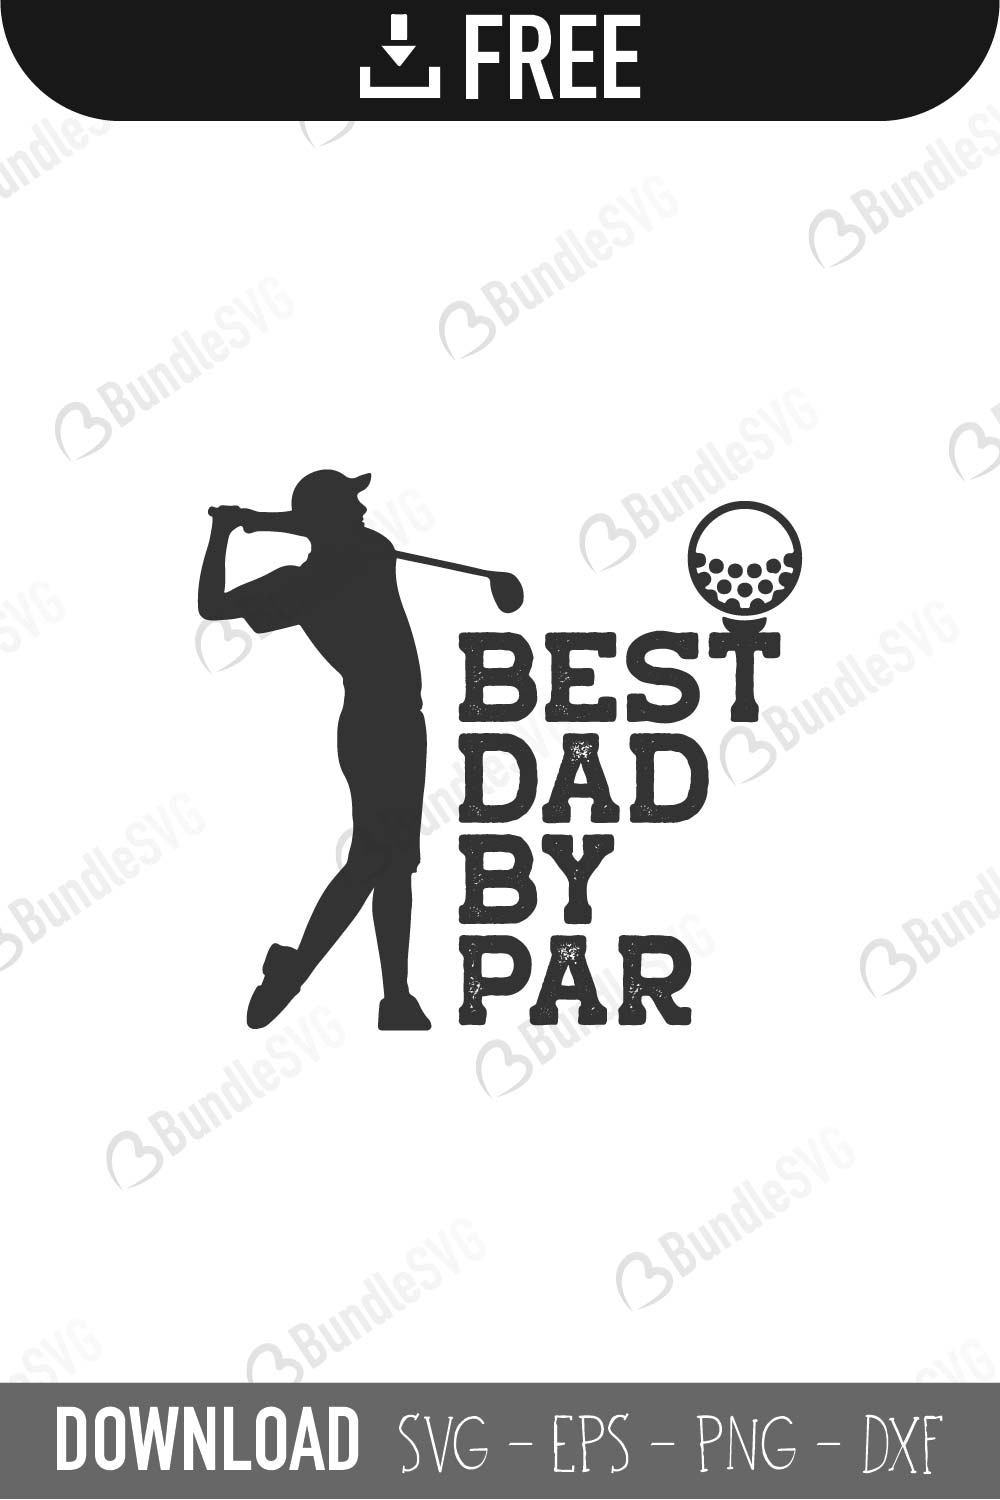 Download Best Dad By Par Svg Cut Files Free Download Bundlesvg